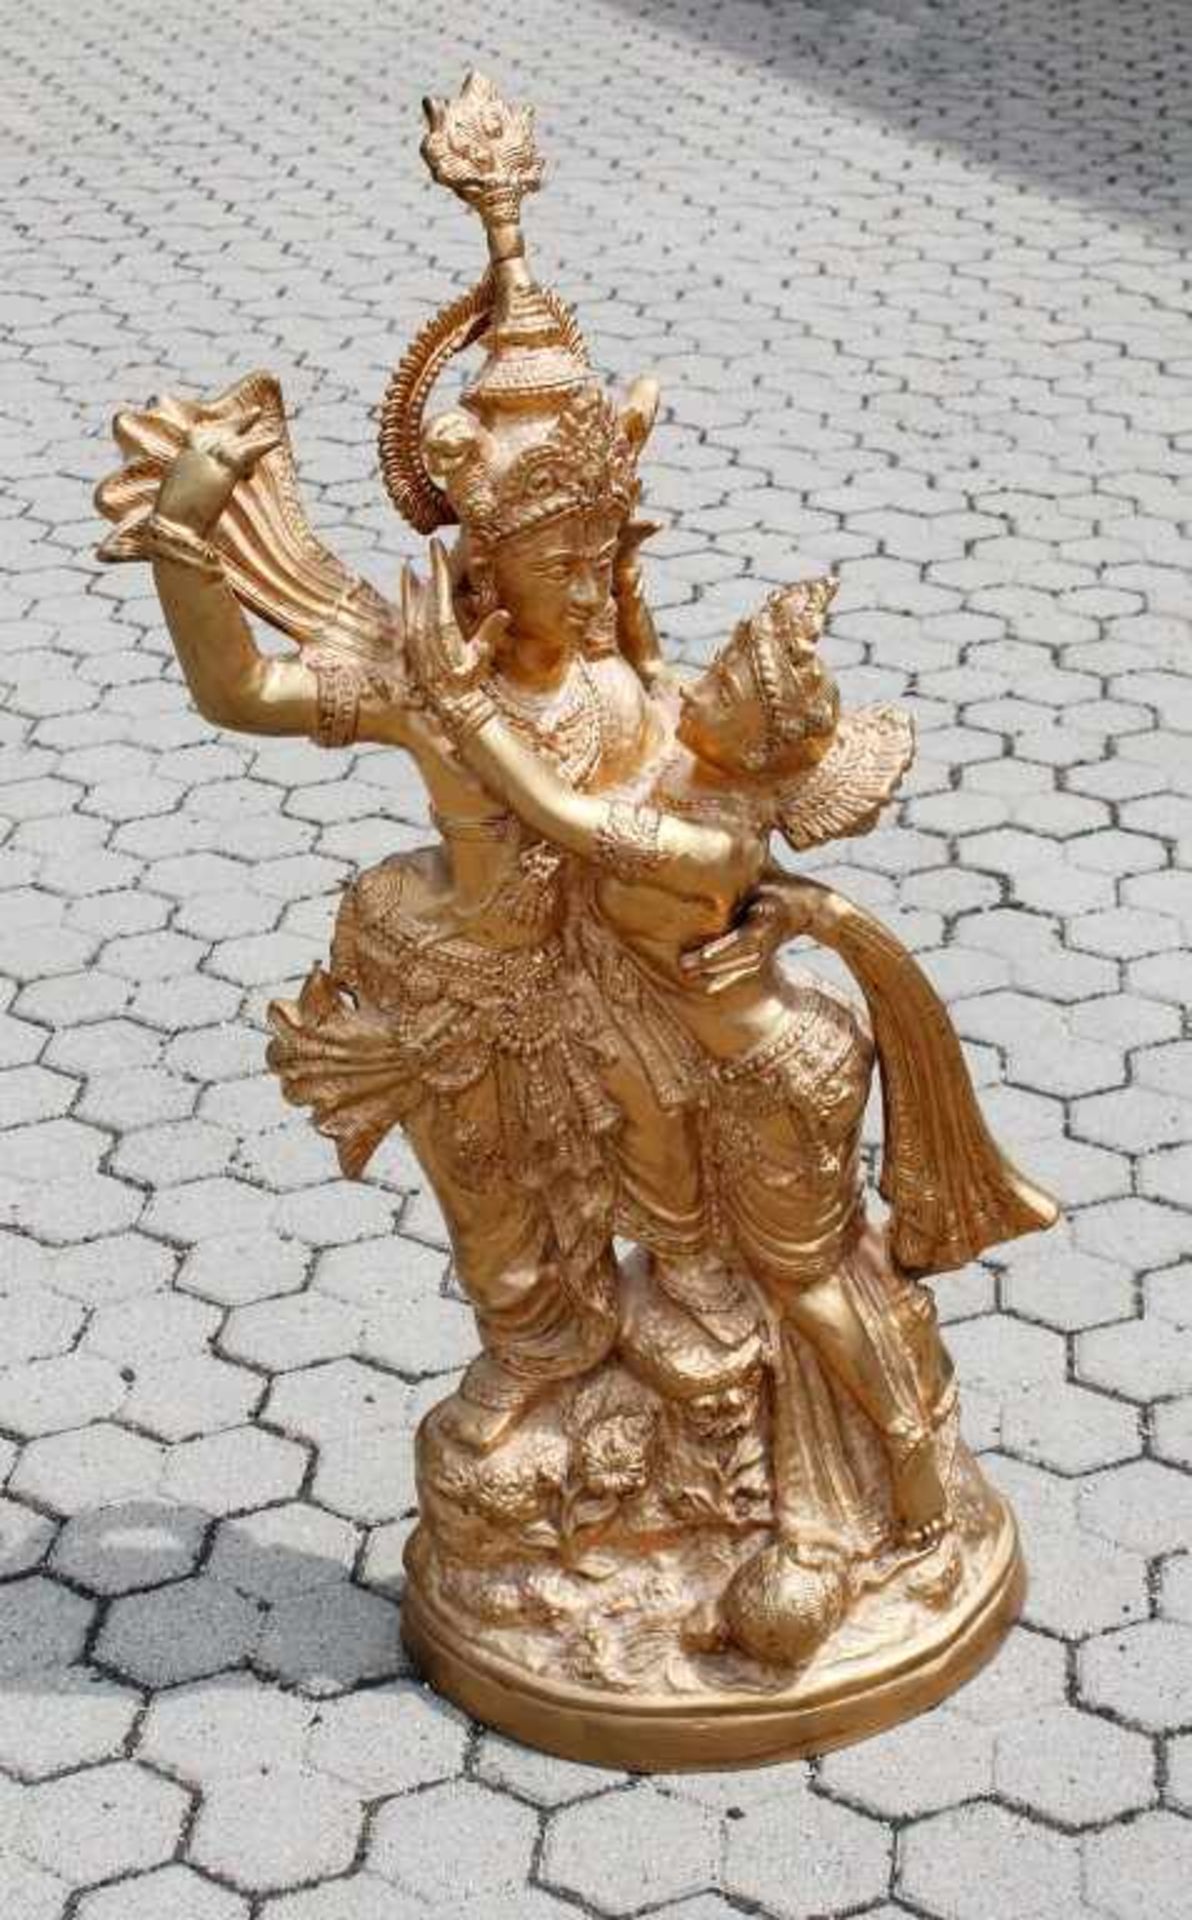 Gott Rama und Sita - Indien Sita in den Armen Ramas liegend, ihn liebkosend, auf ovaler Plinthe.